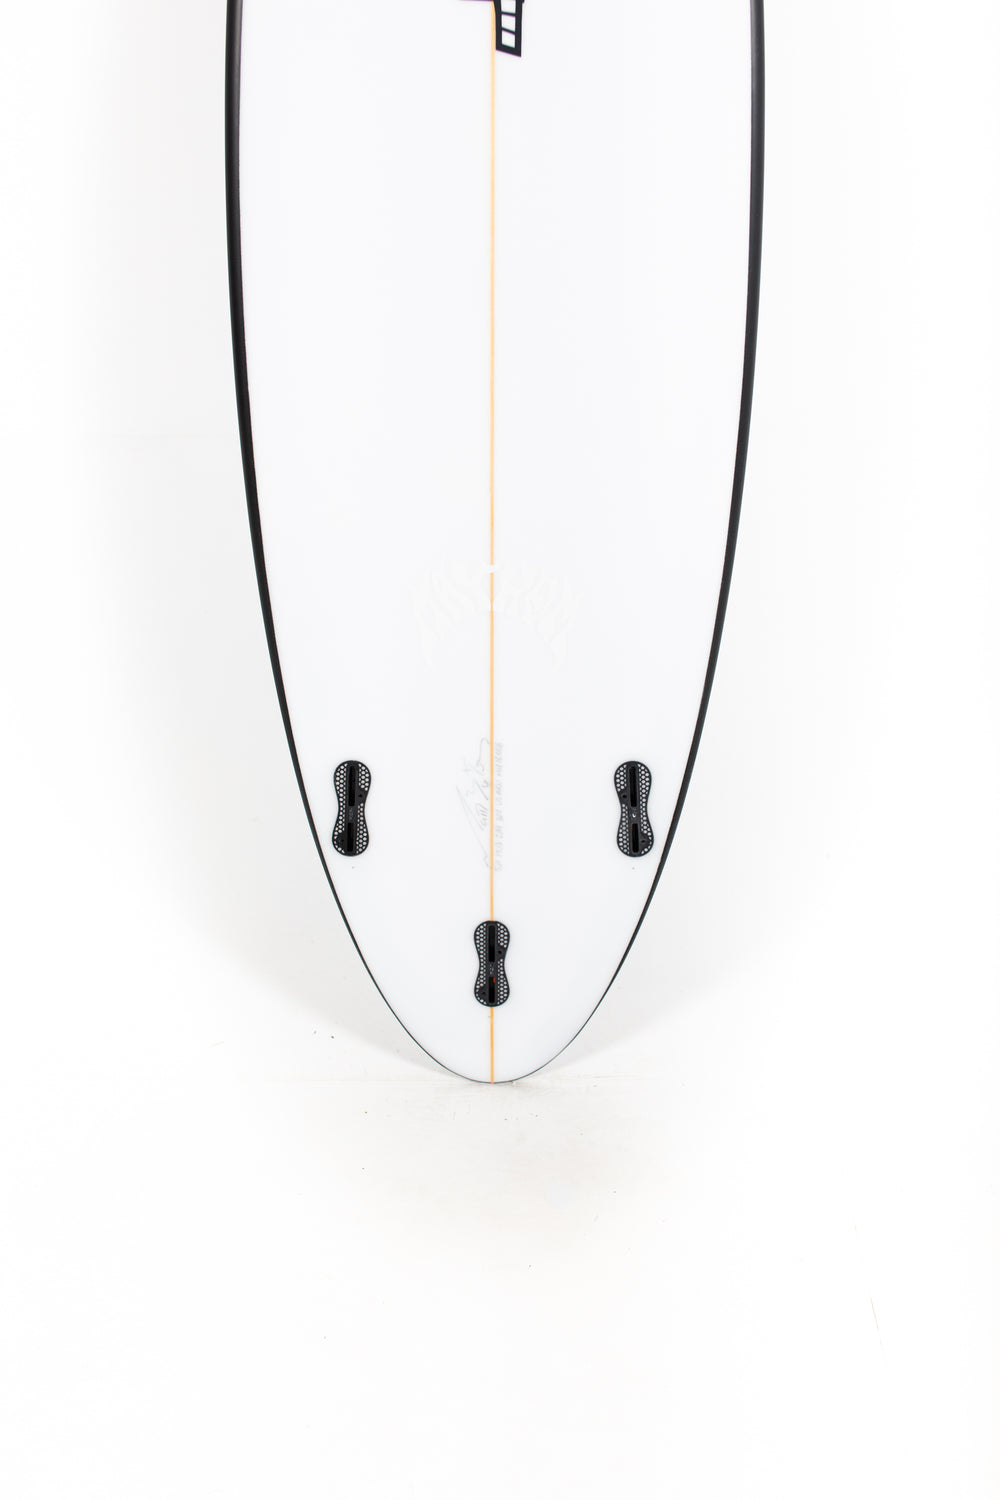 Lost Surfboard - SABO TAJ by Matt Biolos - 5'11” x 19,13 x 2,44 x 